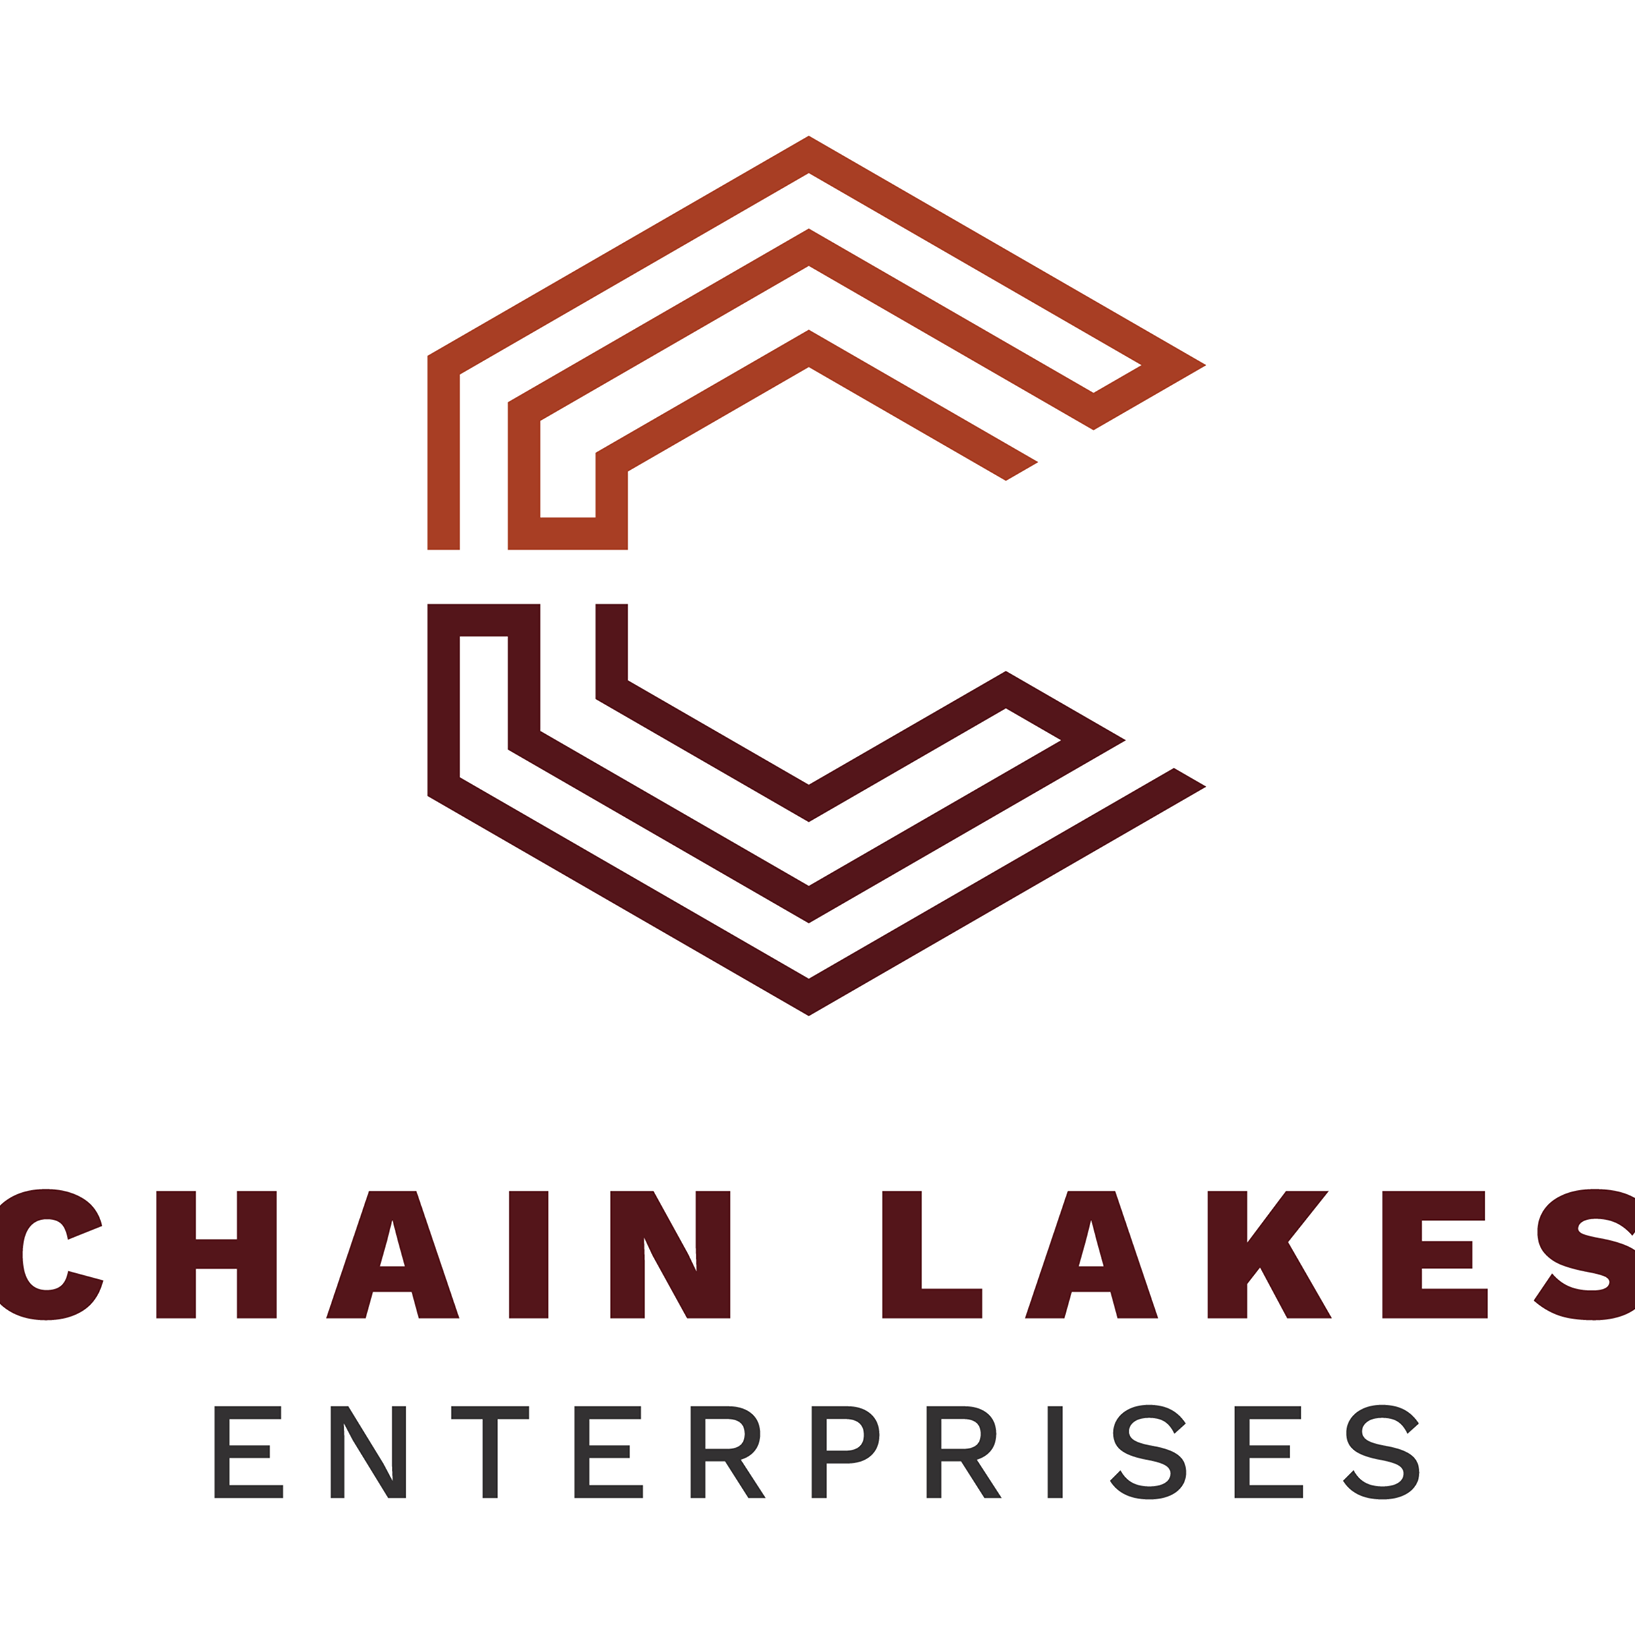 Chain Lake Enterprises Ltd Fredericton (506)261-4159